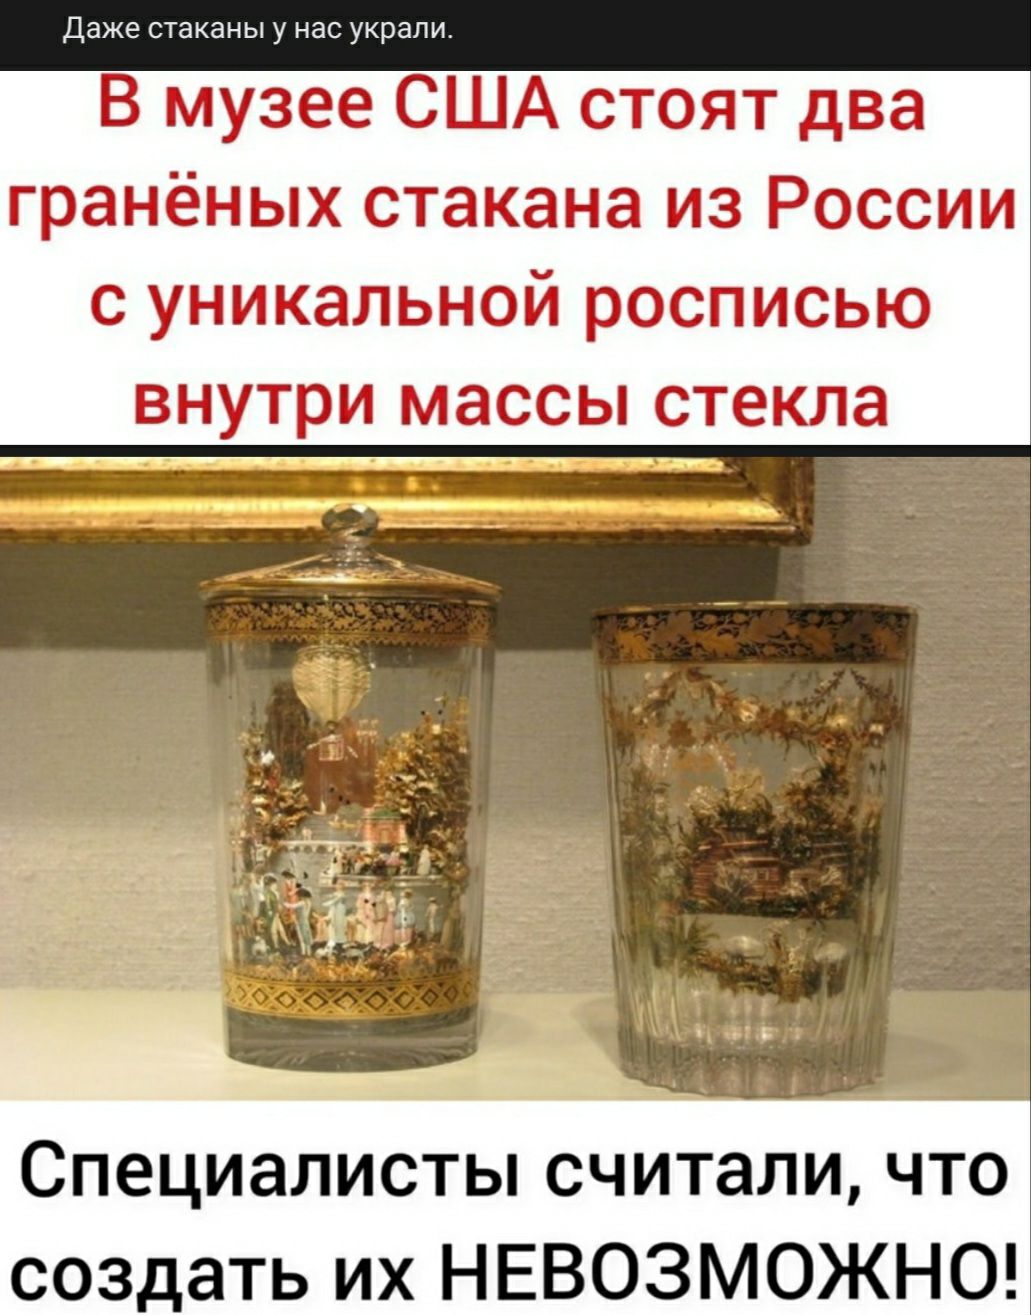 Даже стаканы у нас украли В музее США стоят два гранёных стакана из России с уникальной росписью внутри массы стекла Специалисты считали что создать их НЕВОЗМОЖНО